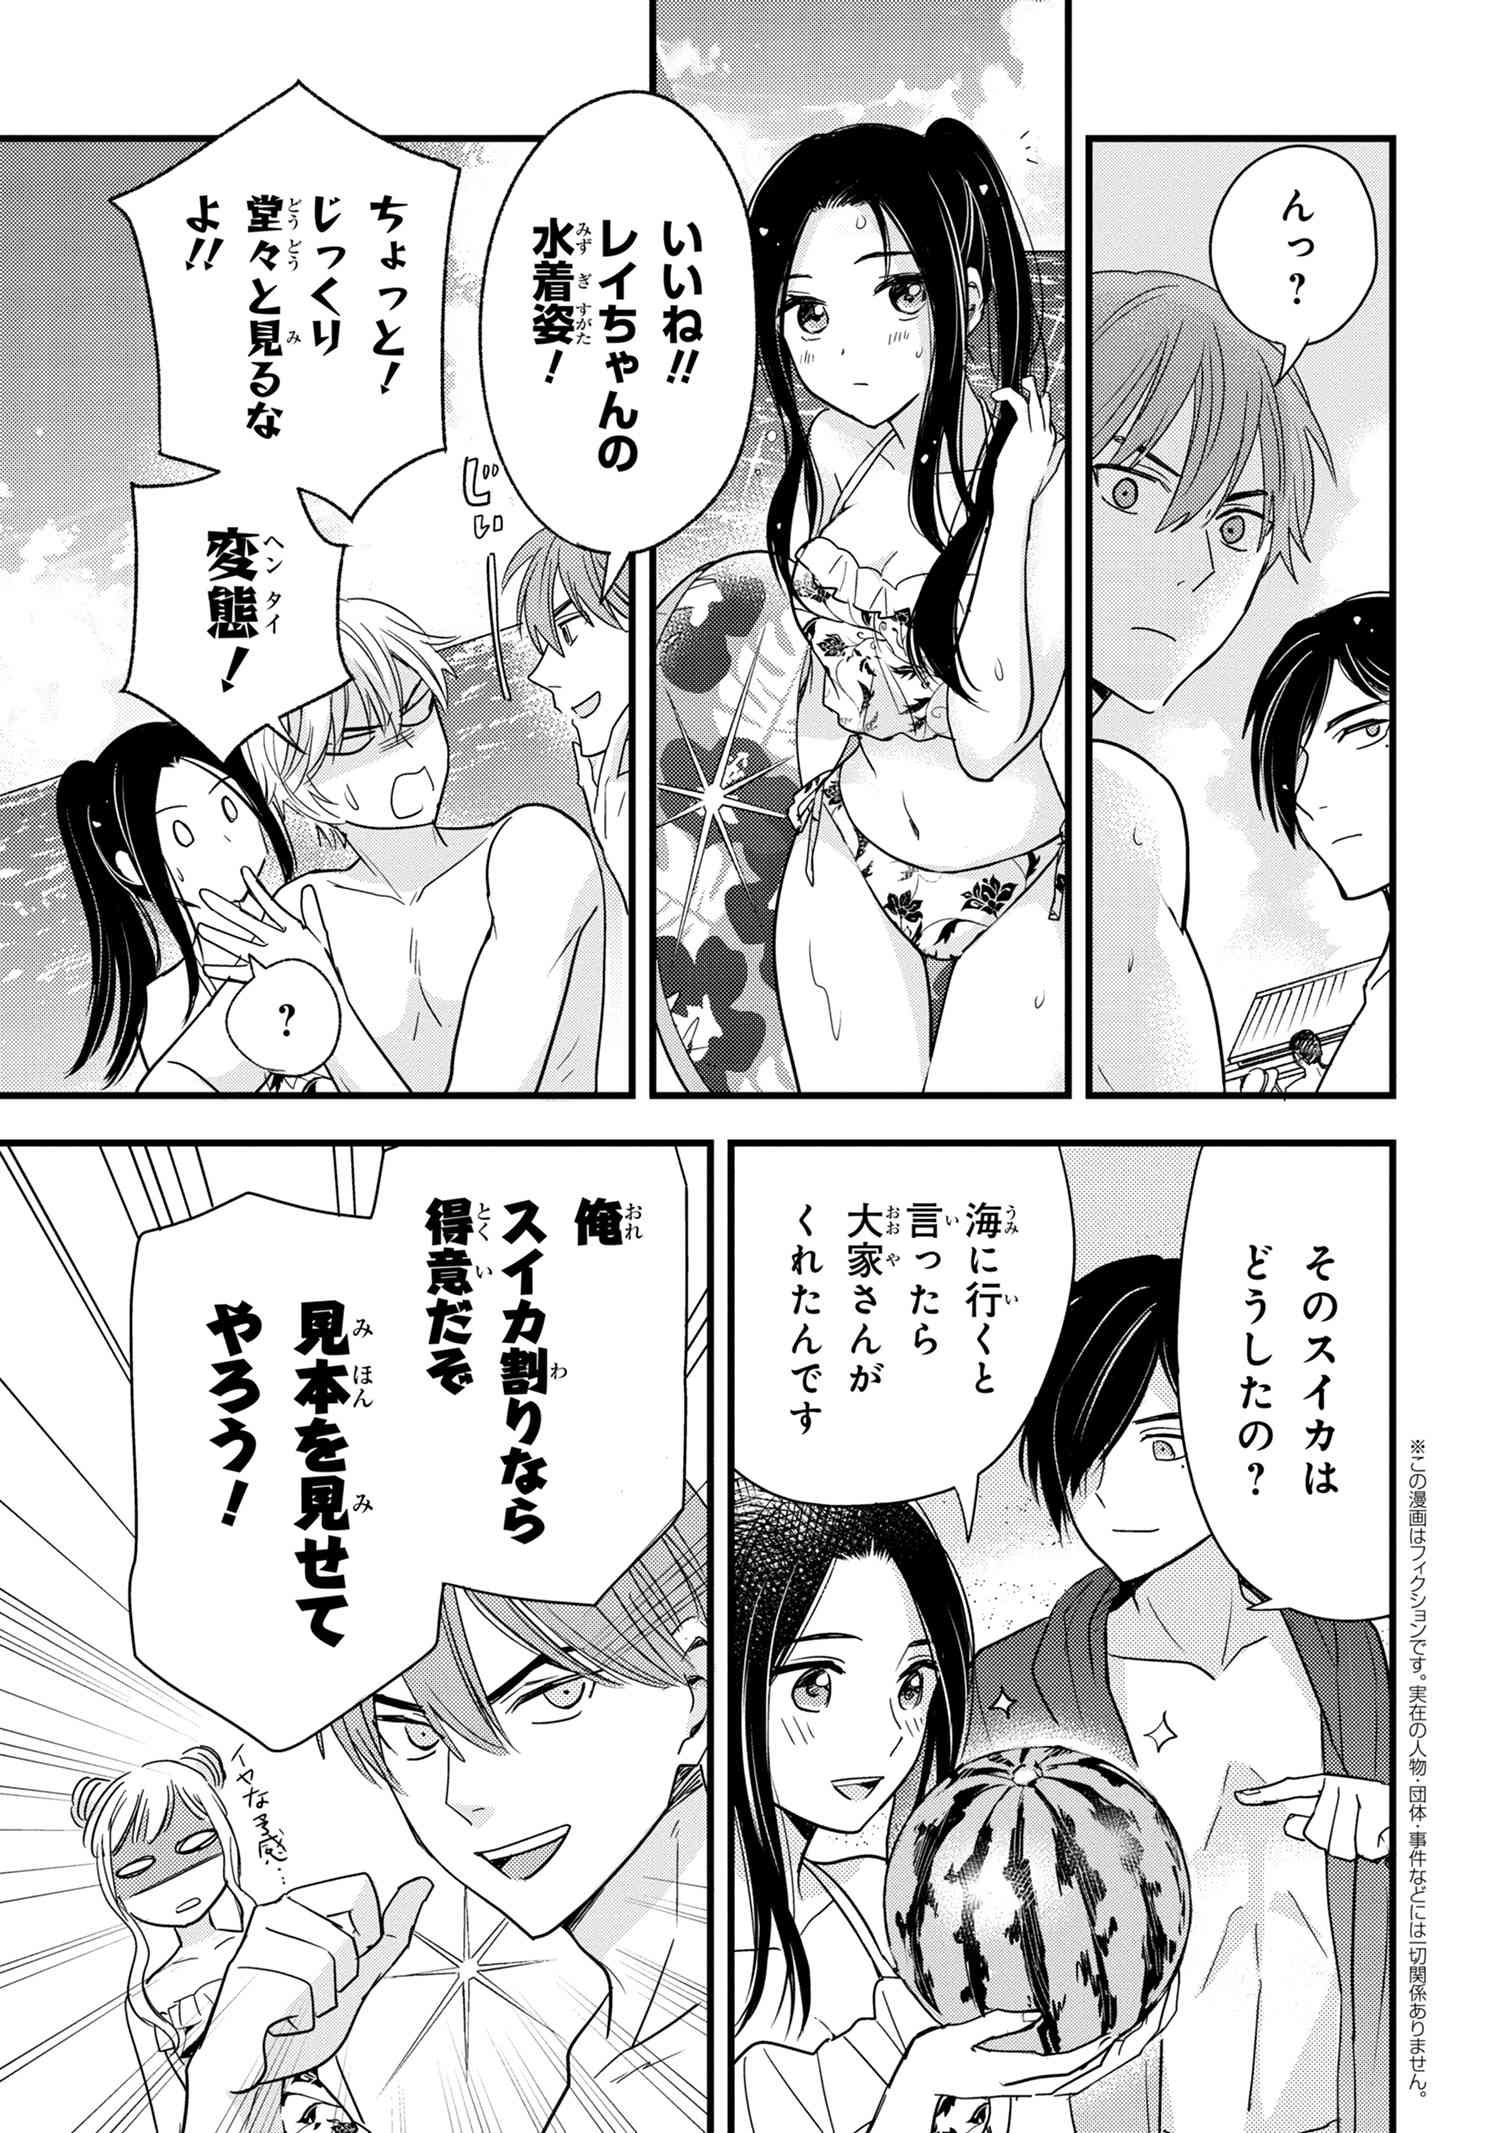 Reiko no Fuugi Akuyaku Reijou to Yobarete imasu ga, tada no Binbou Musume desu - Chapter 12.3 - Page 1